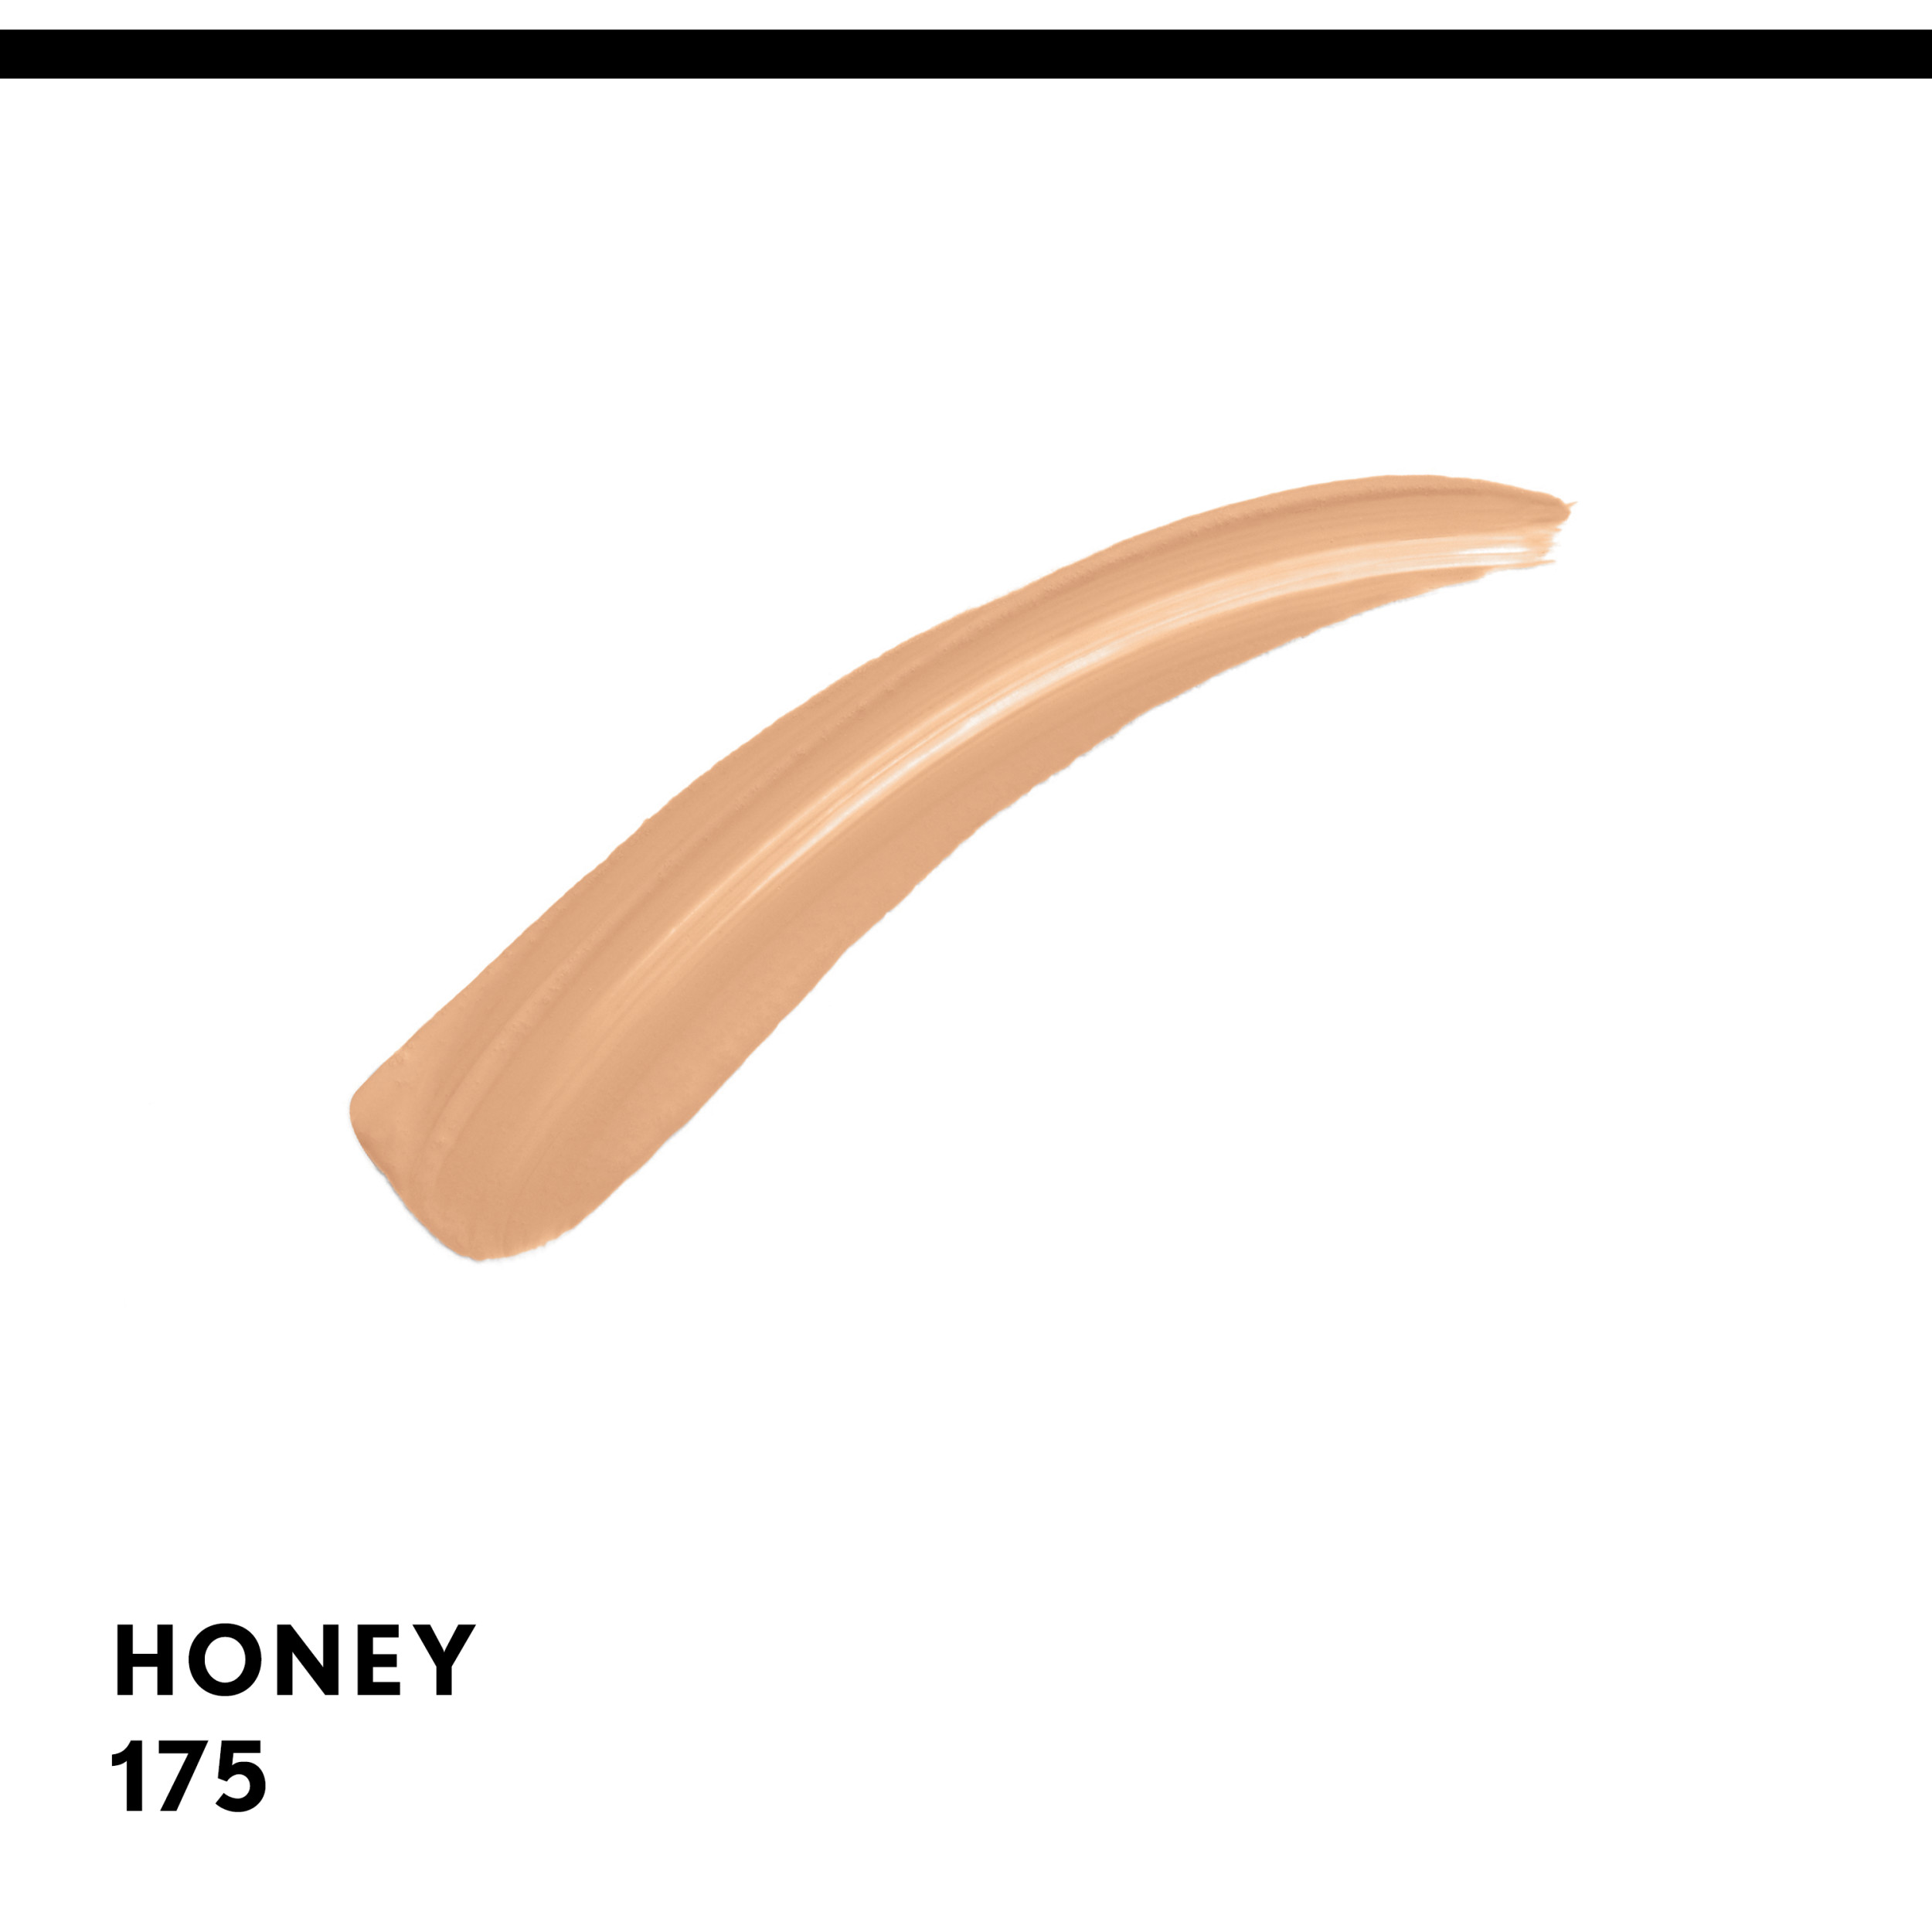 COVERGIRL Clean Invisible Lightweight Concealer, 175 Honey, 0.32 oz, Concealer Makeup, Concealer for Dark Circles, Under Eye Concealer, Full Coverage Concealer - image 3 of 11